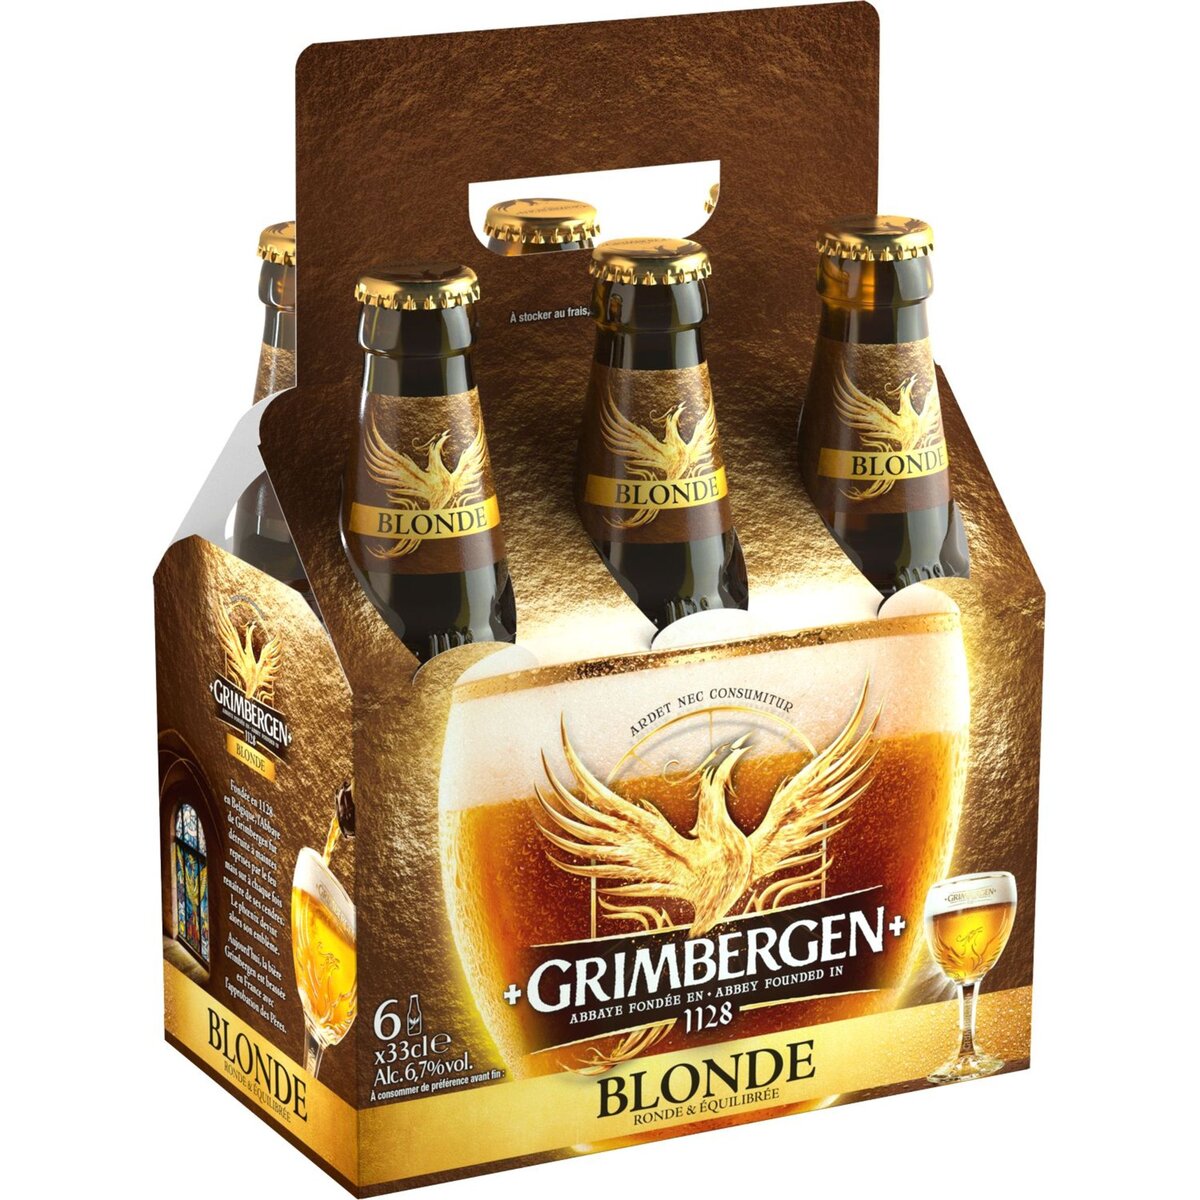 GRIMBERGEN Grimbergen Bière blonde panier 6.7% bouteilles 6x33cl 6x33cl